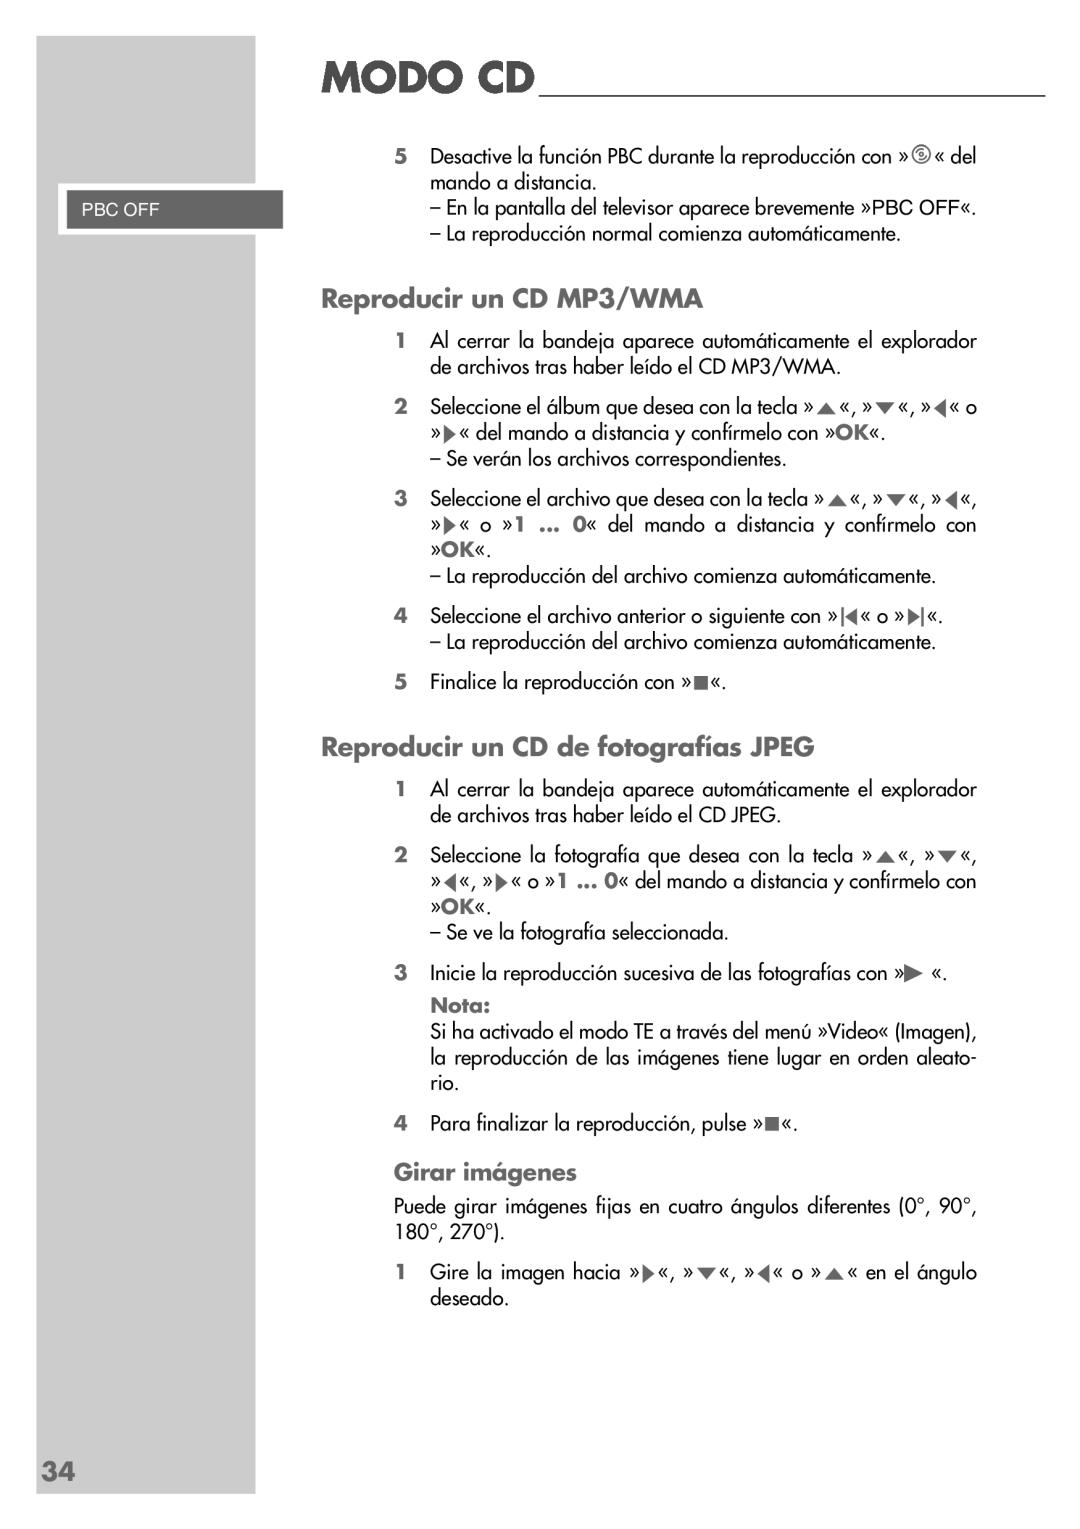 Grundig DR 5400 DD manual Reproducir un CD MP3/WMA, Reproducir un CD de fotografías JPEG, Girar imágenes 